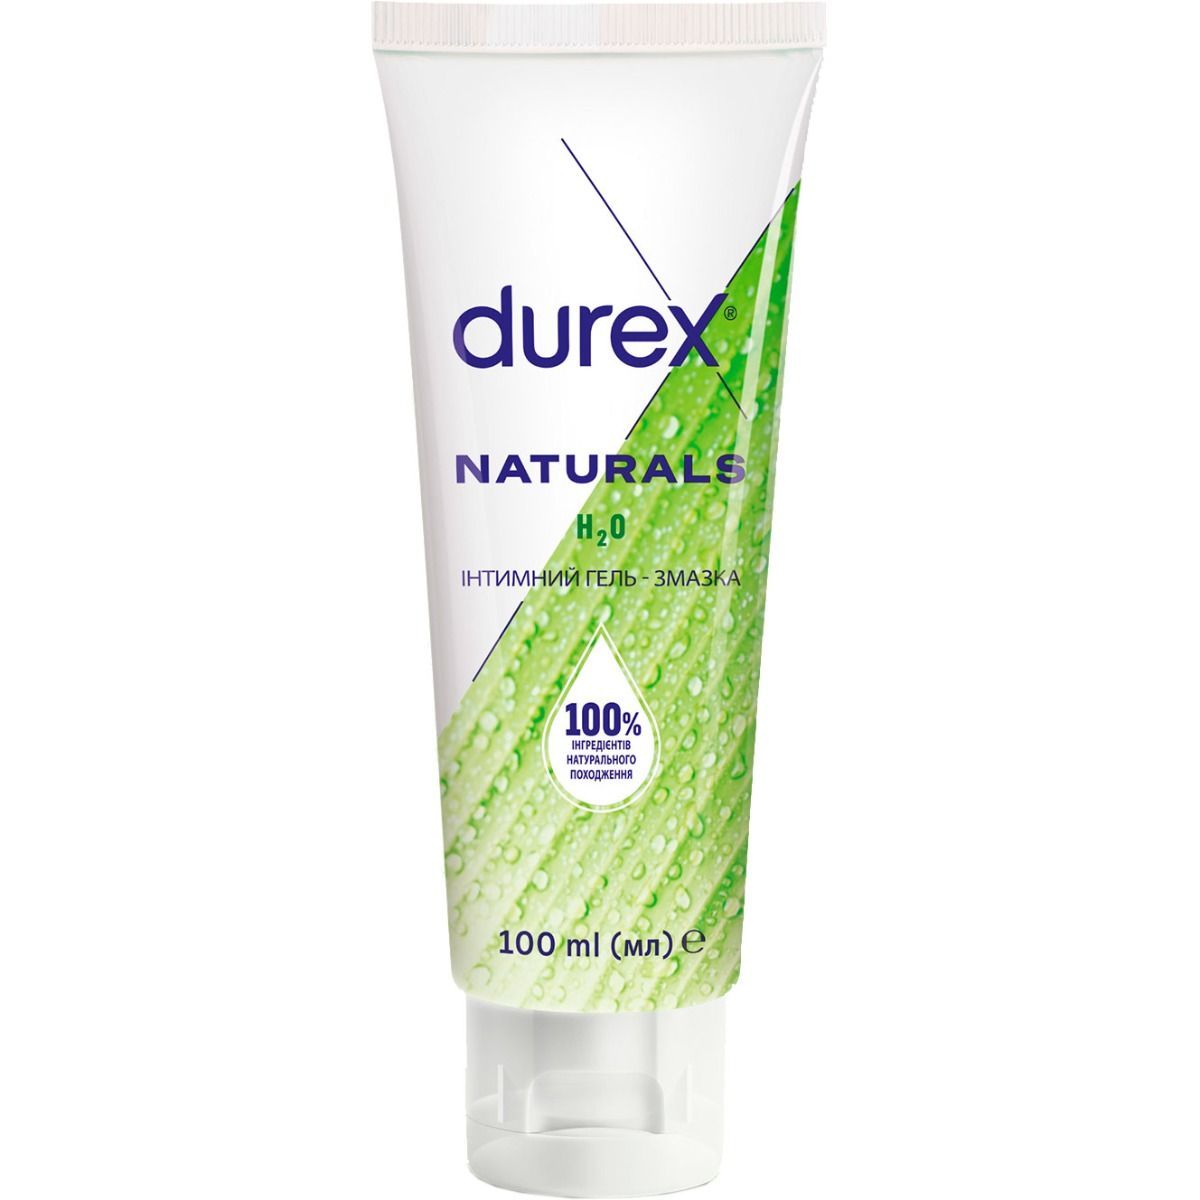 Интимный гель-смазка Durex Naturals с натуральными ингредиентами (лубрикант), 100 мл (3036592) - фото 1